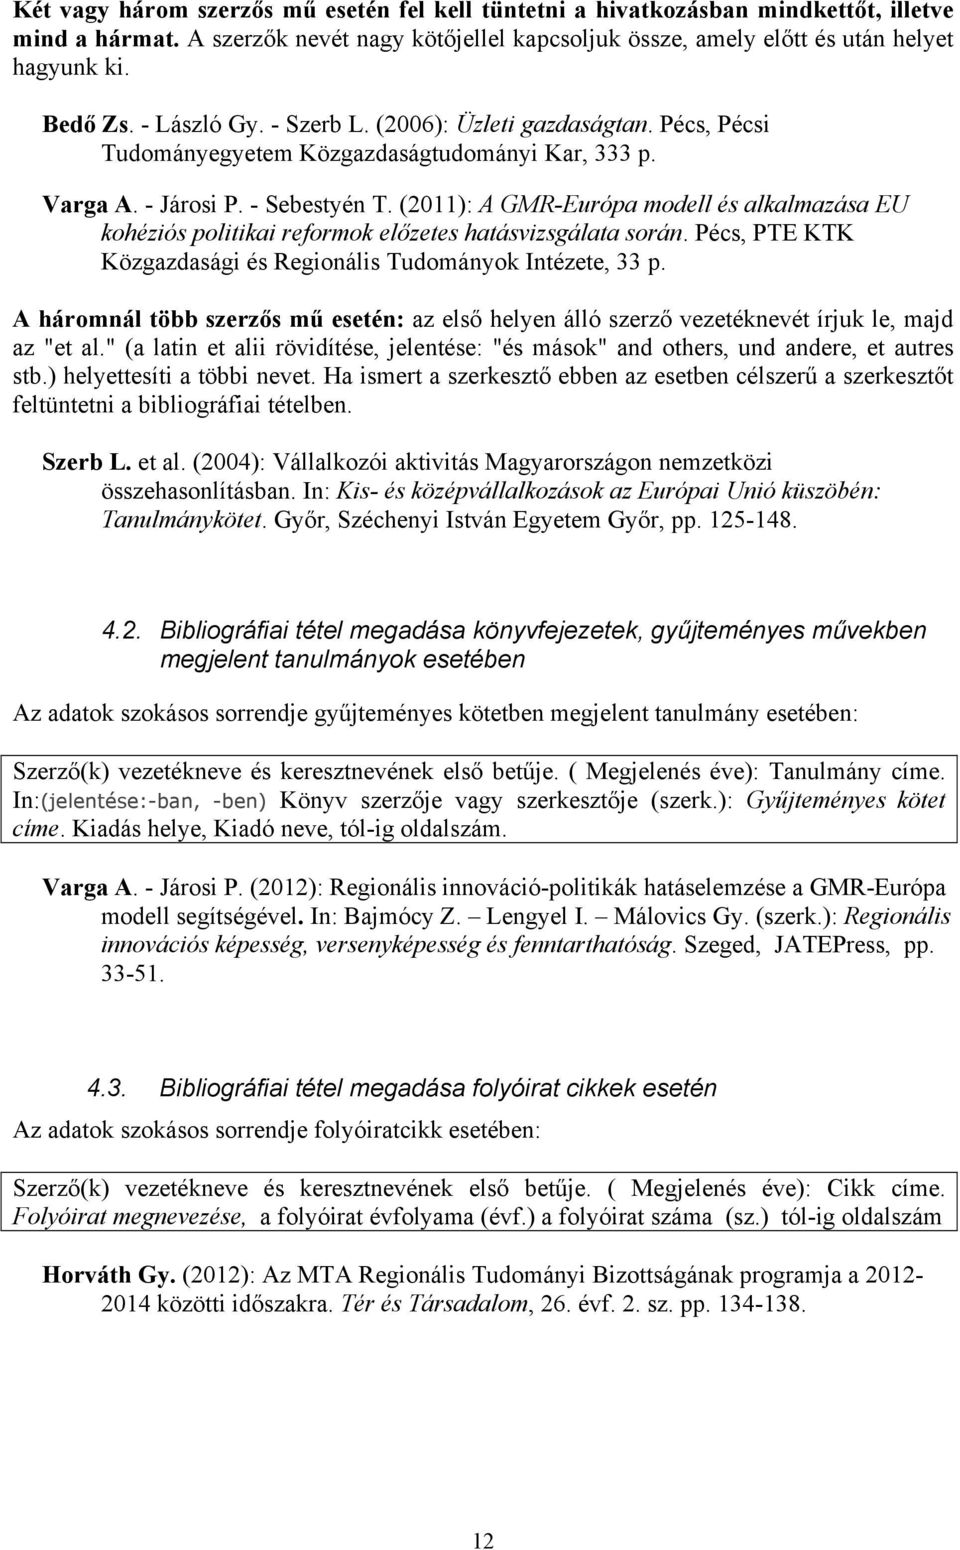 (2011): A GMR-Európa modell és alkalmazása EU kohéziós politikai reformok előzetes hatásvizsgálata során. Pécs, PTE KTK Közgazdasági és Regionális Tudományok Intézete, 33 p.